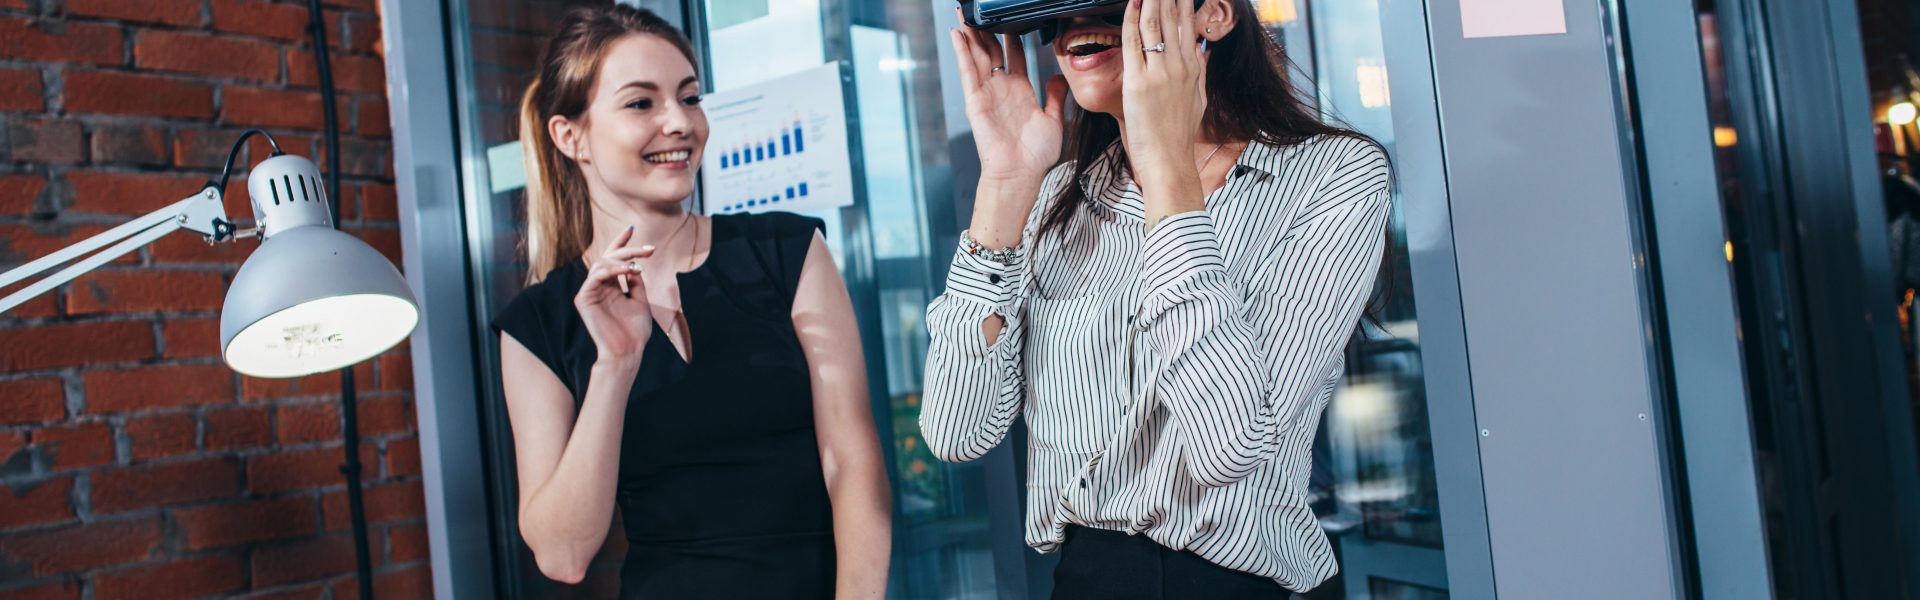 Zwei Frauen mit VR-Brille